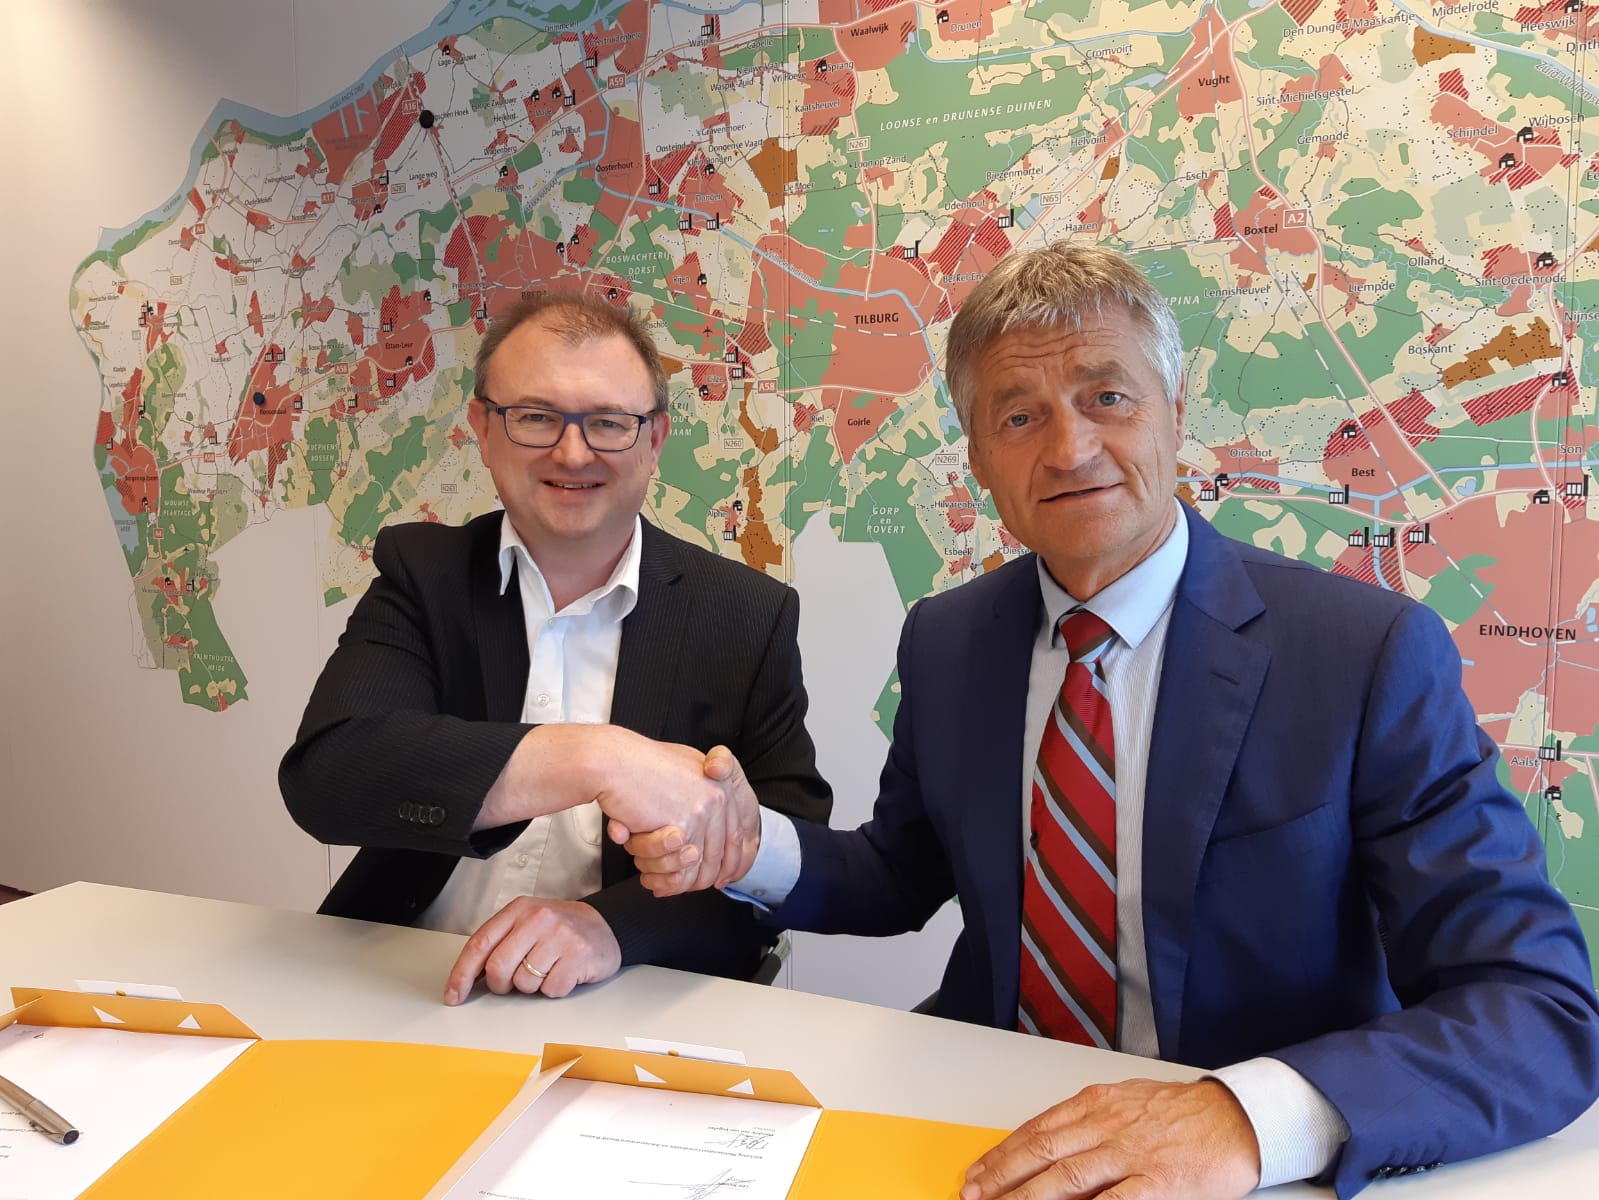 Hendrik-Jan van Engelen van MCA Brabant (l) en Leo Kemps van LCB hebben de overeenkomst getekend tussen de twee organisaties. (Foto MCA / LCB)